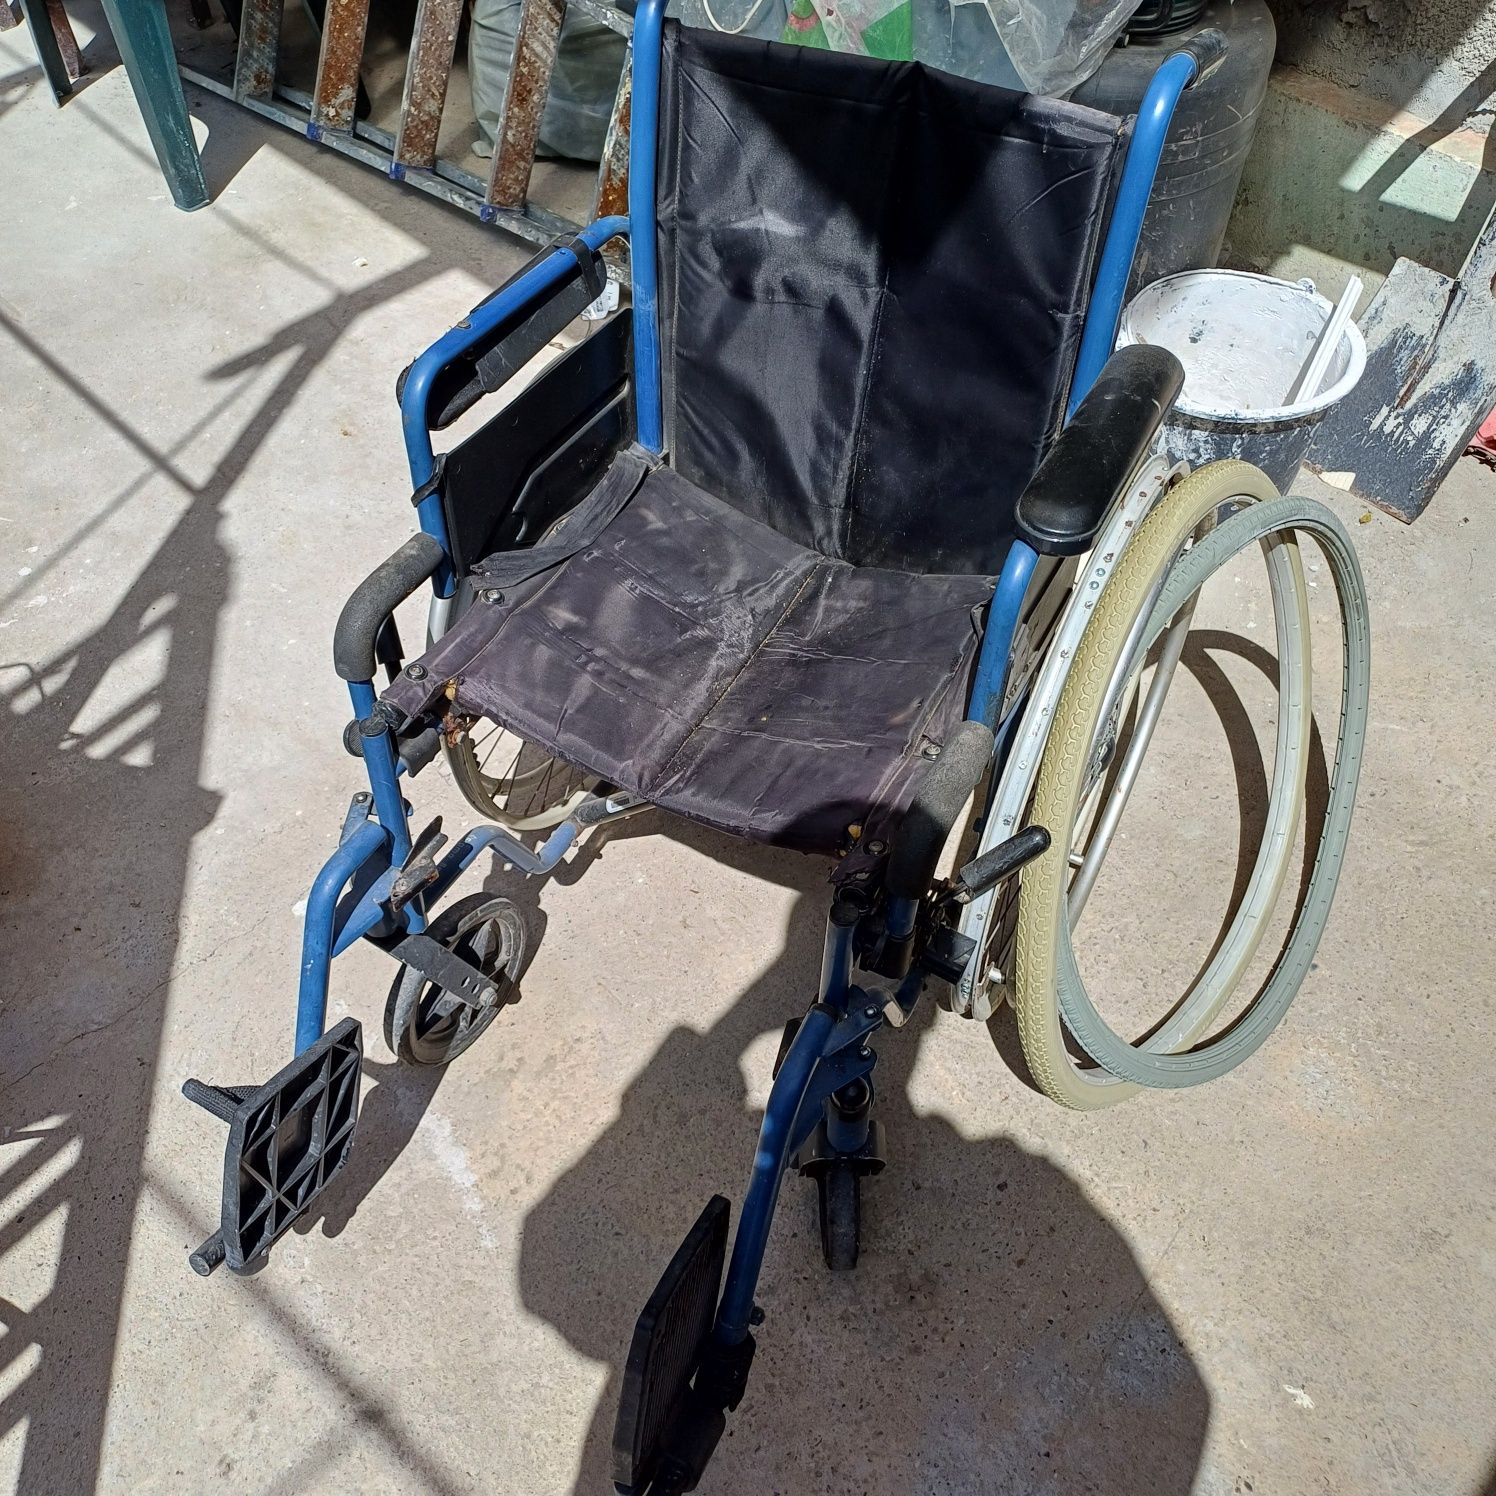 Gratis cărucior pentru persoane cu dizabilități